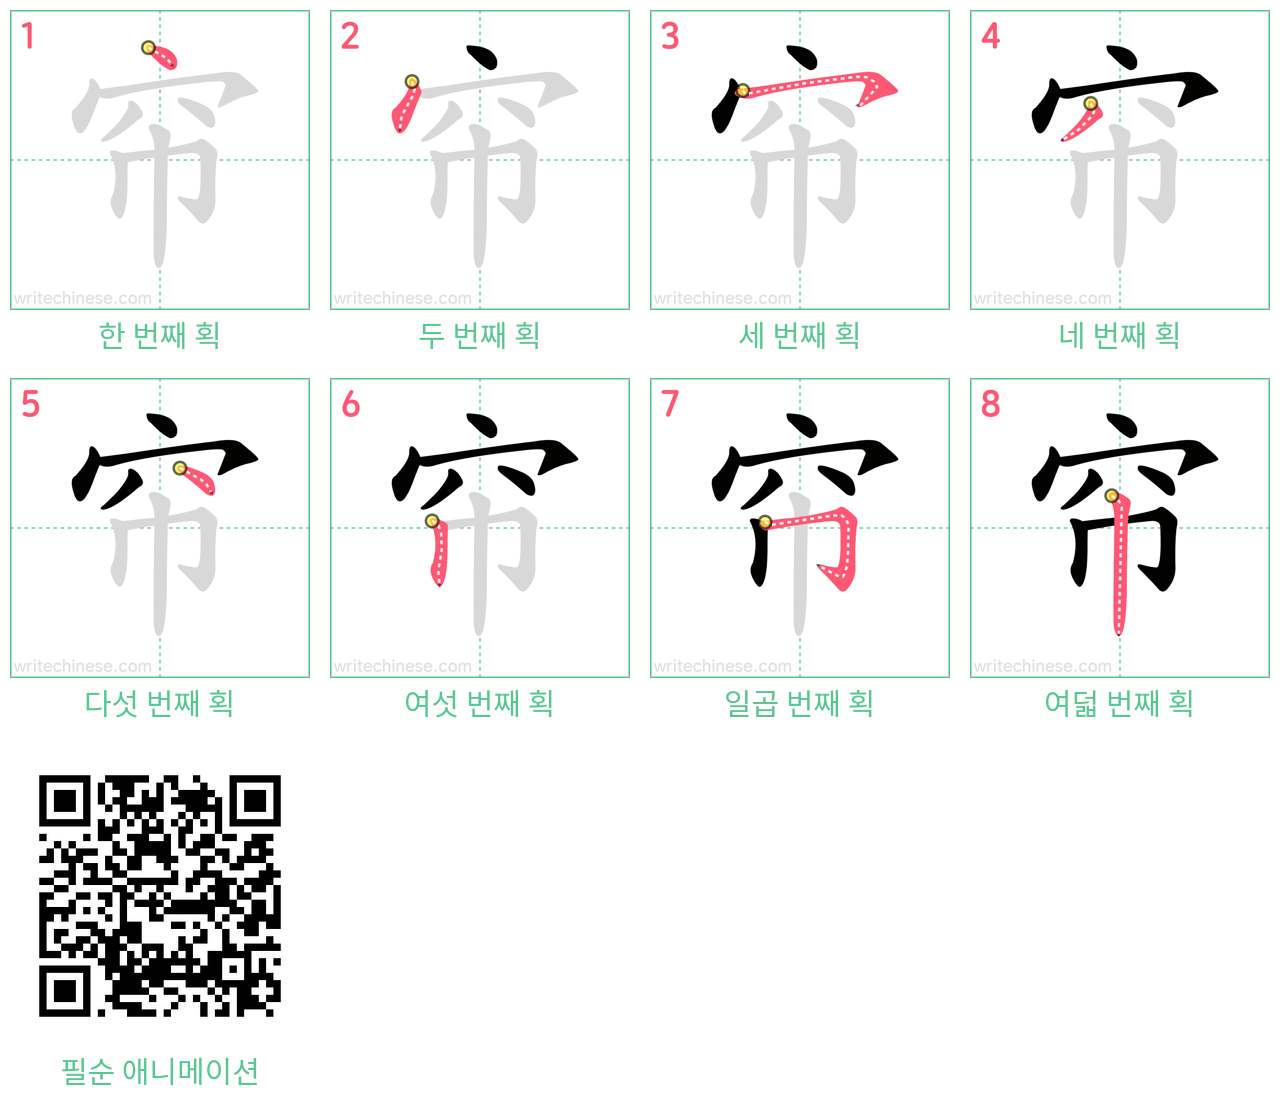 帘 step-by-step stroke order diagrams